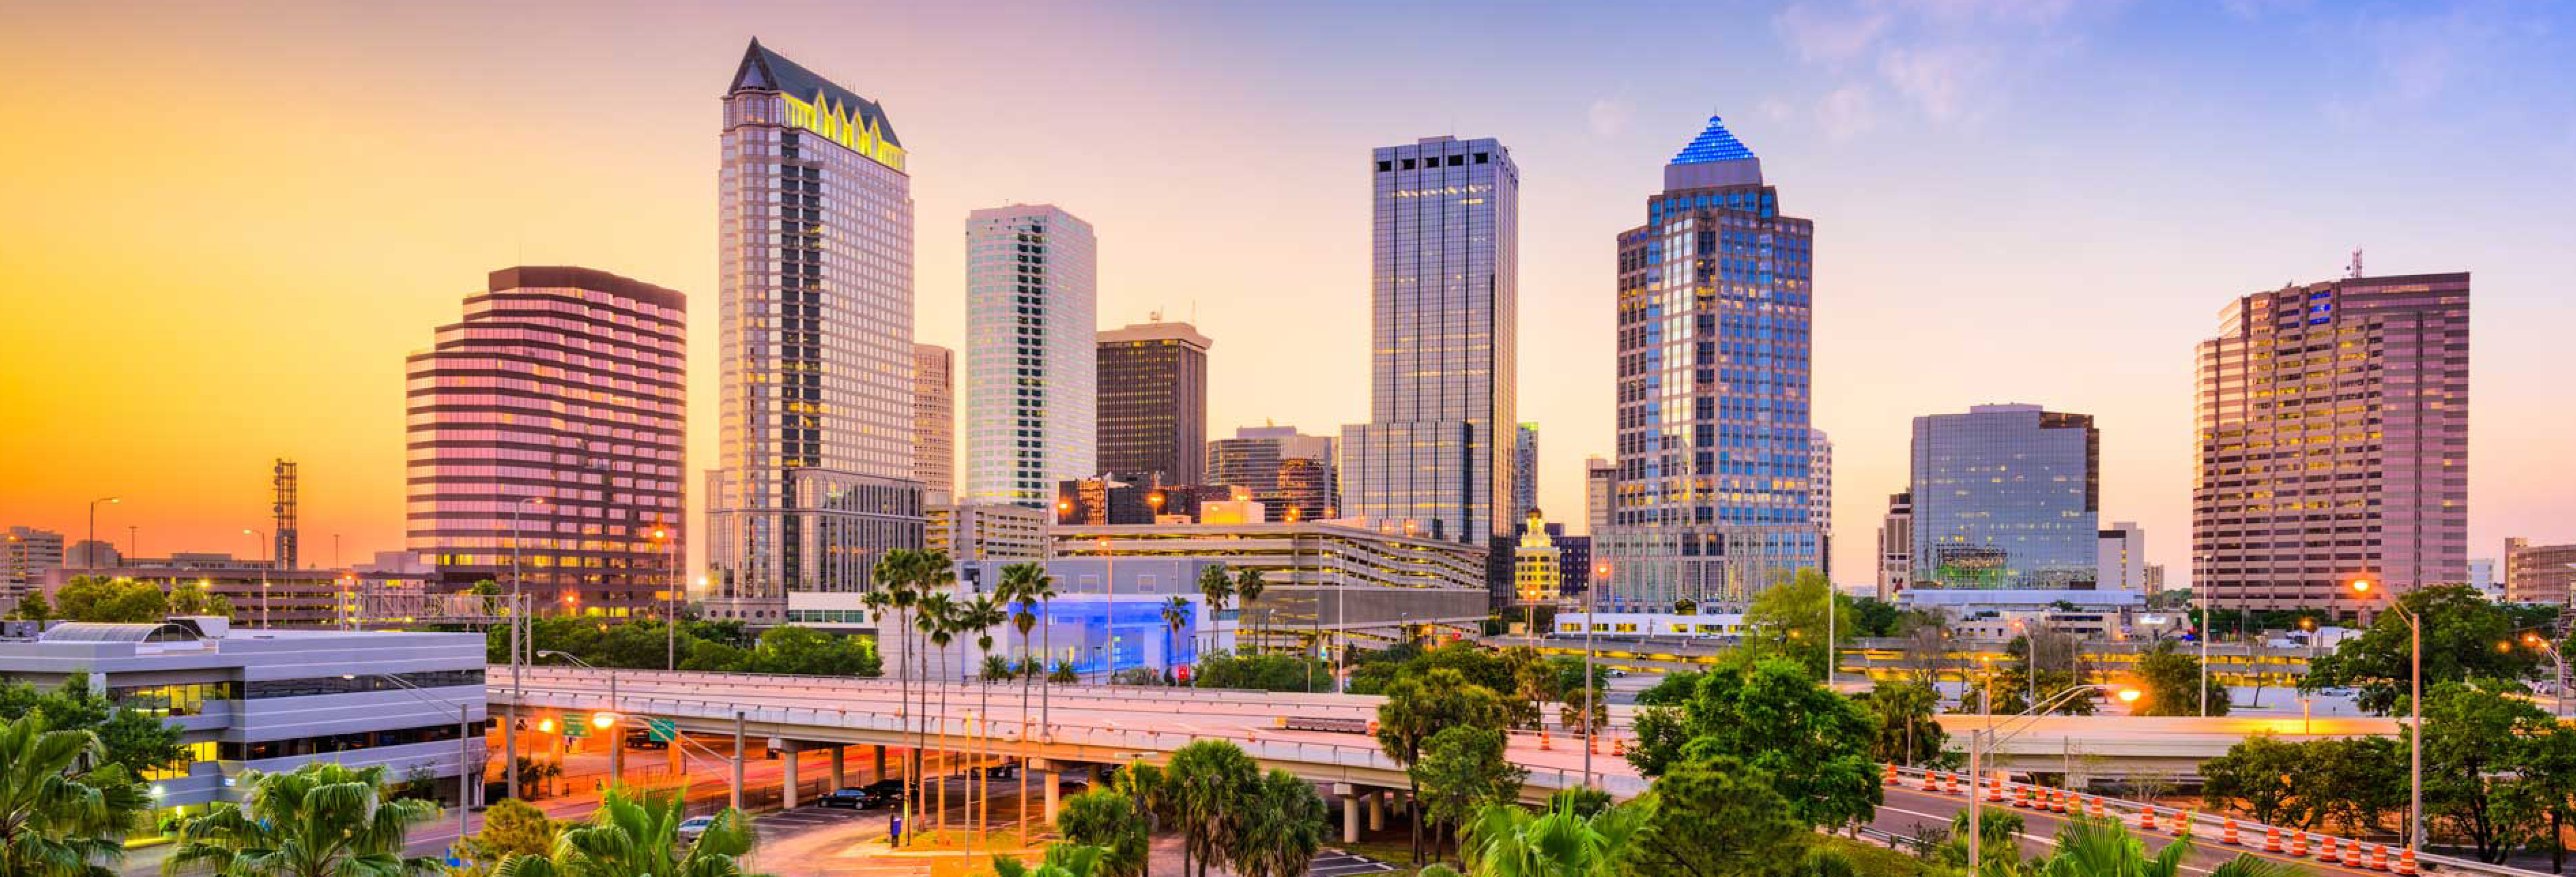 Tampa Skyline Photo